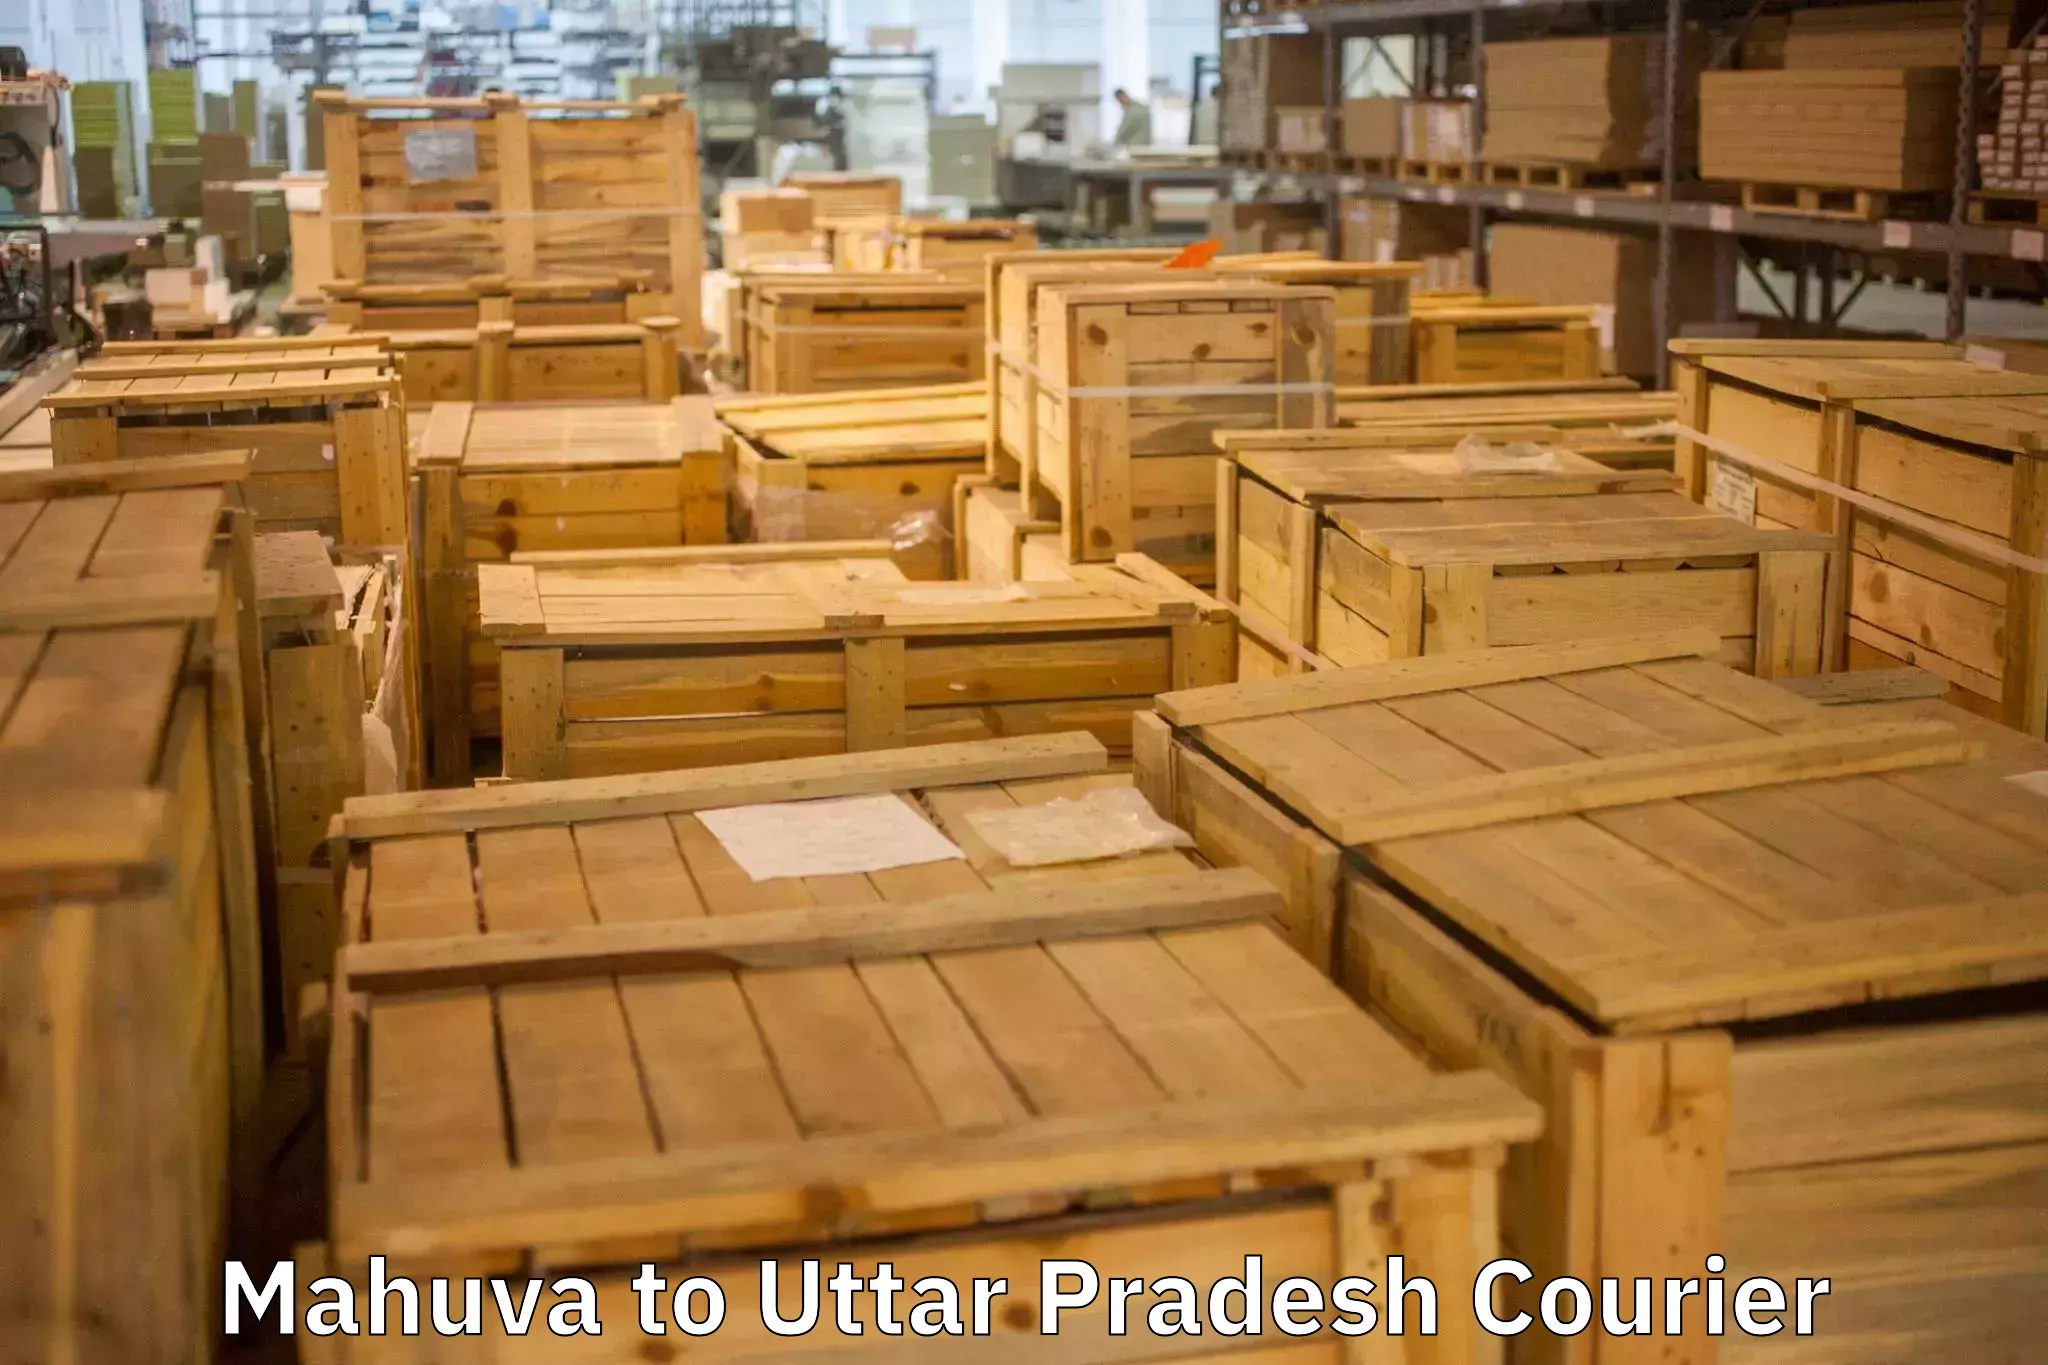 Expert furniture movers Mahuva to Utraula